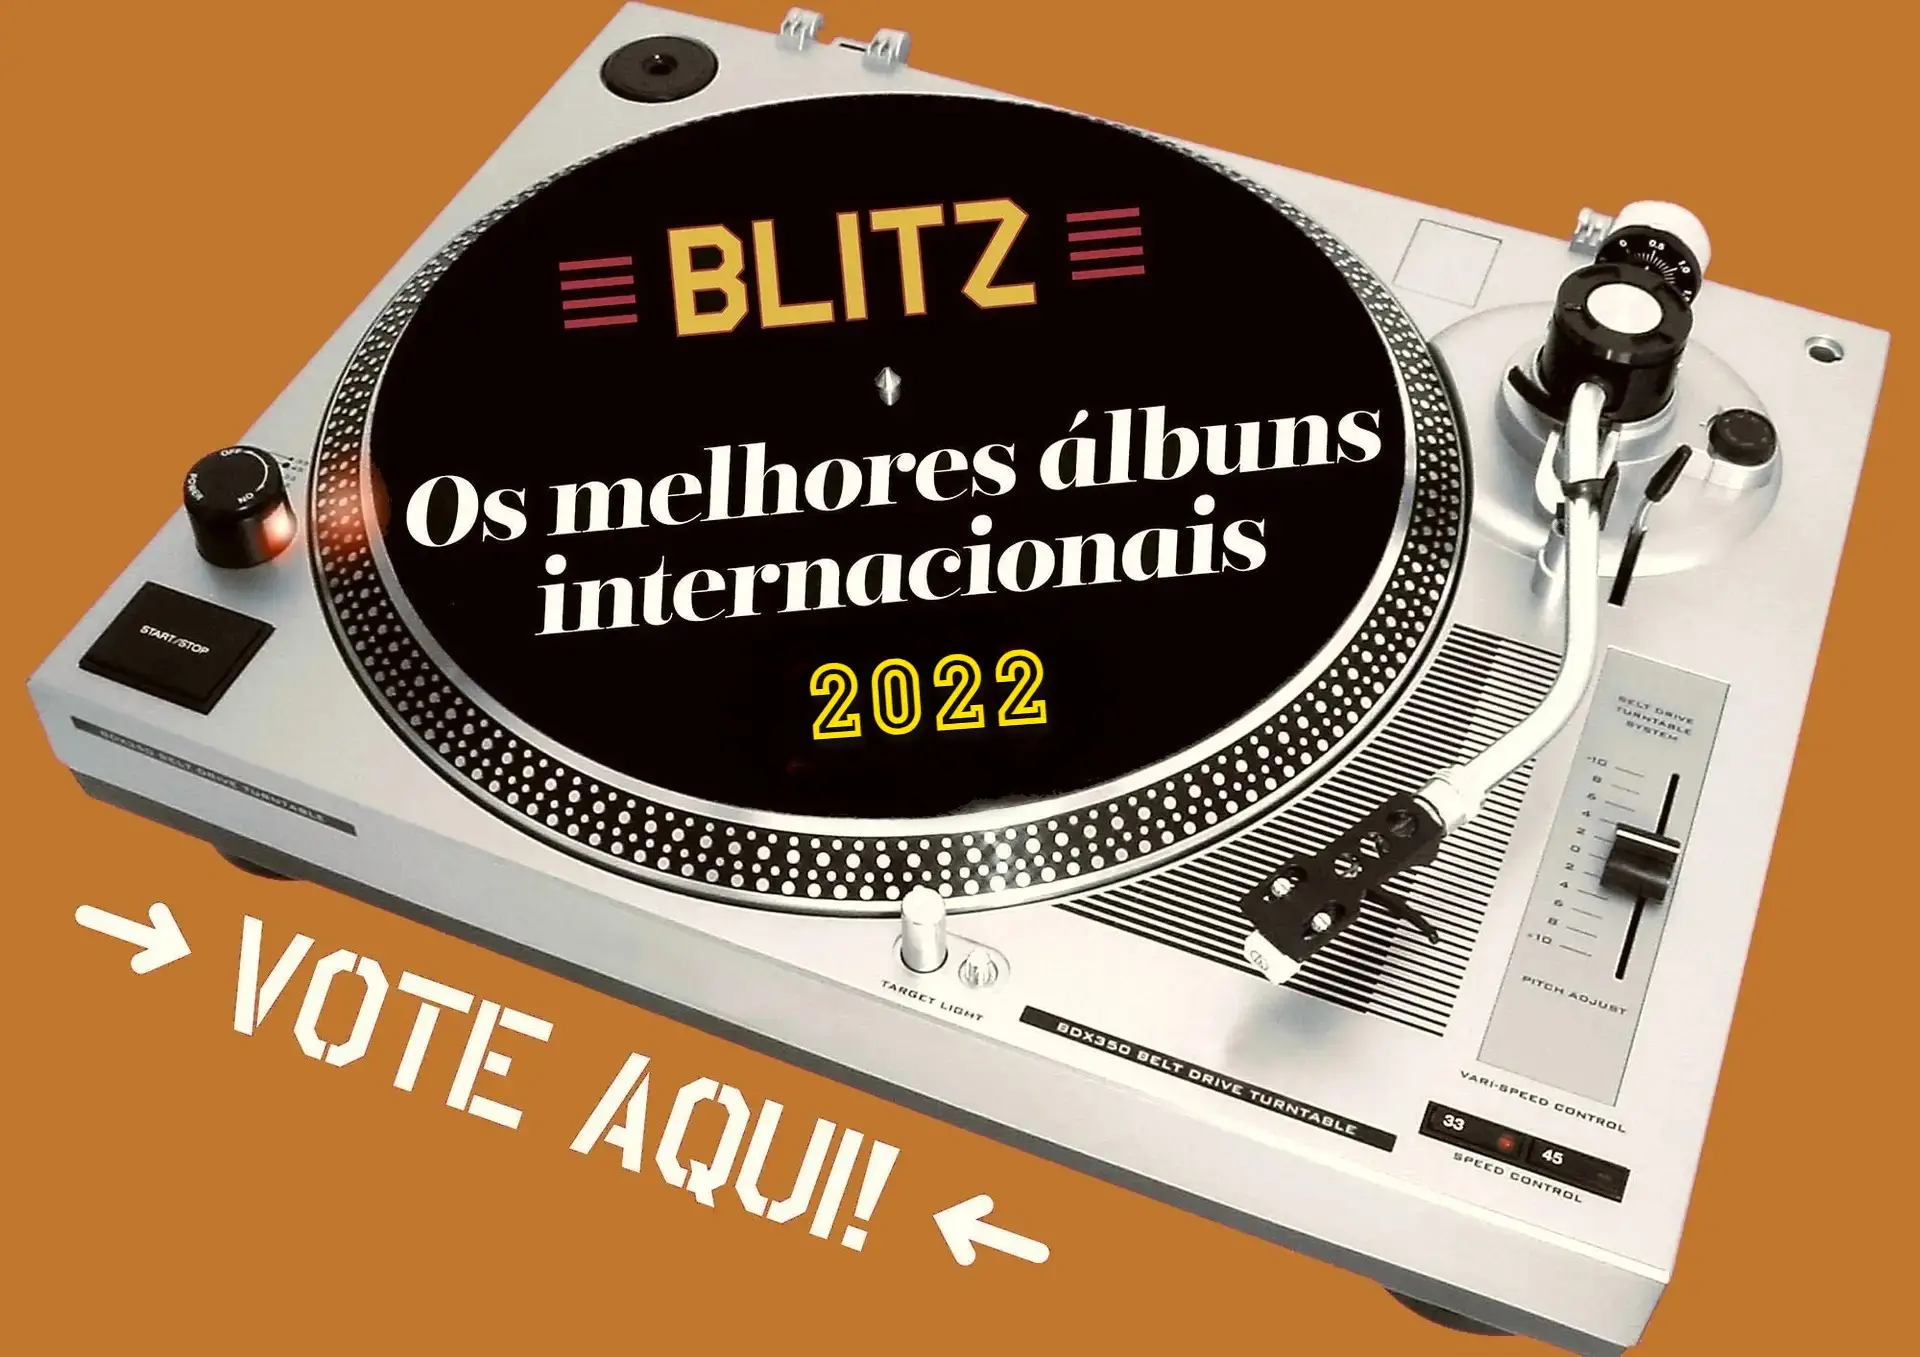 Os melhores álbuns de 2022 para os leitores da BLITZ: vote aqui nos internacionais!